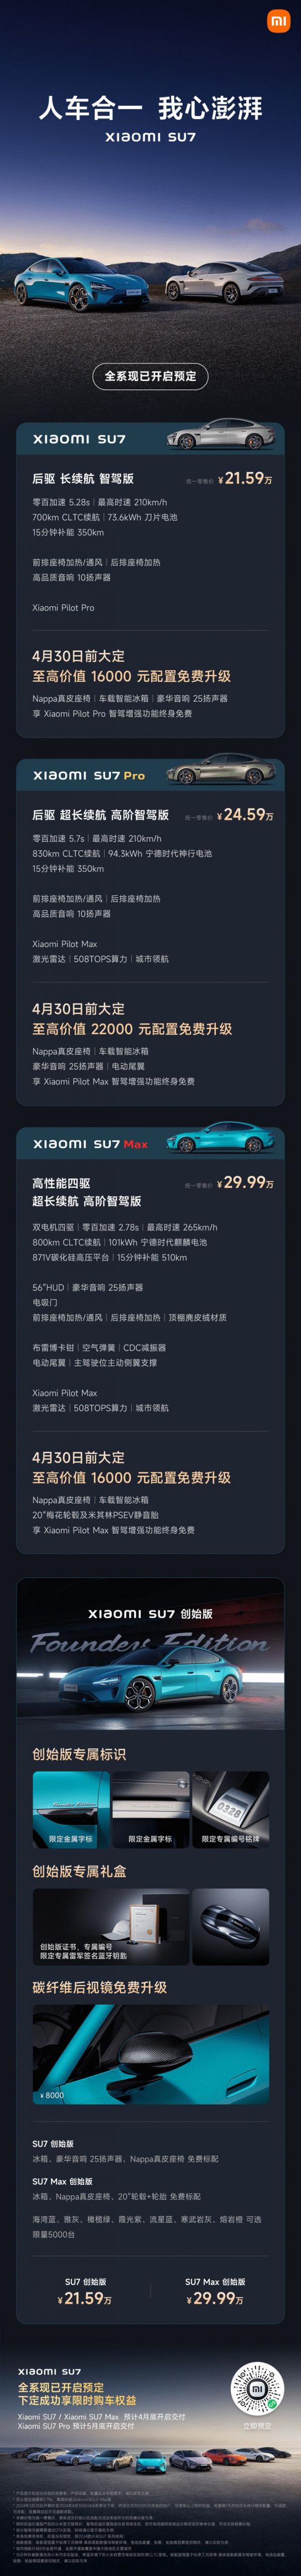 小米汽车SU7正式发布 标准版21.59万元 前沿资讯 第2张